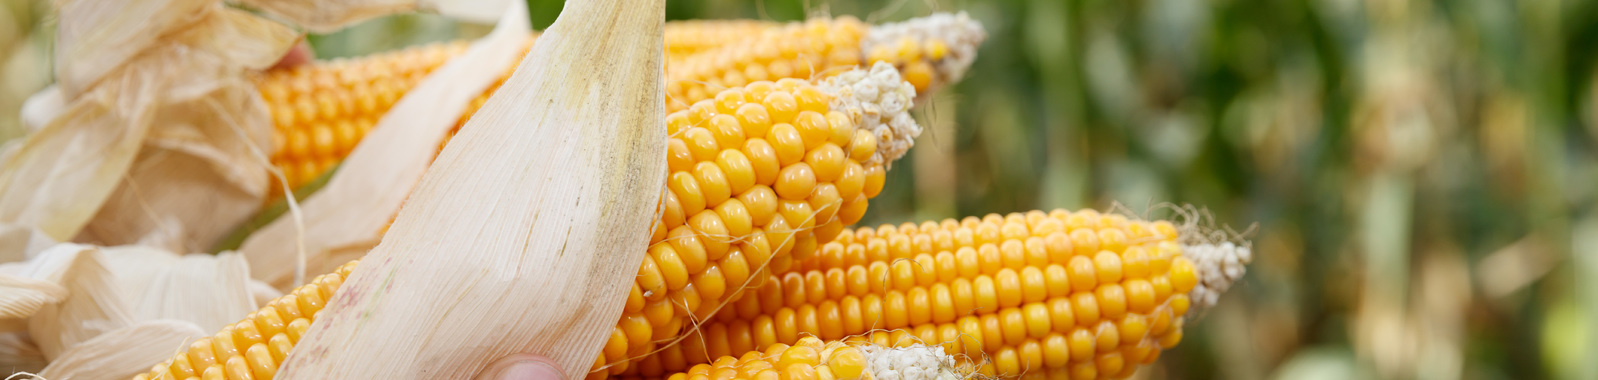 Augmenter le nombre et la taille des grains de maïs